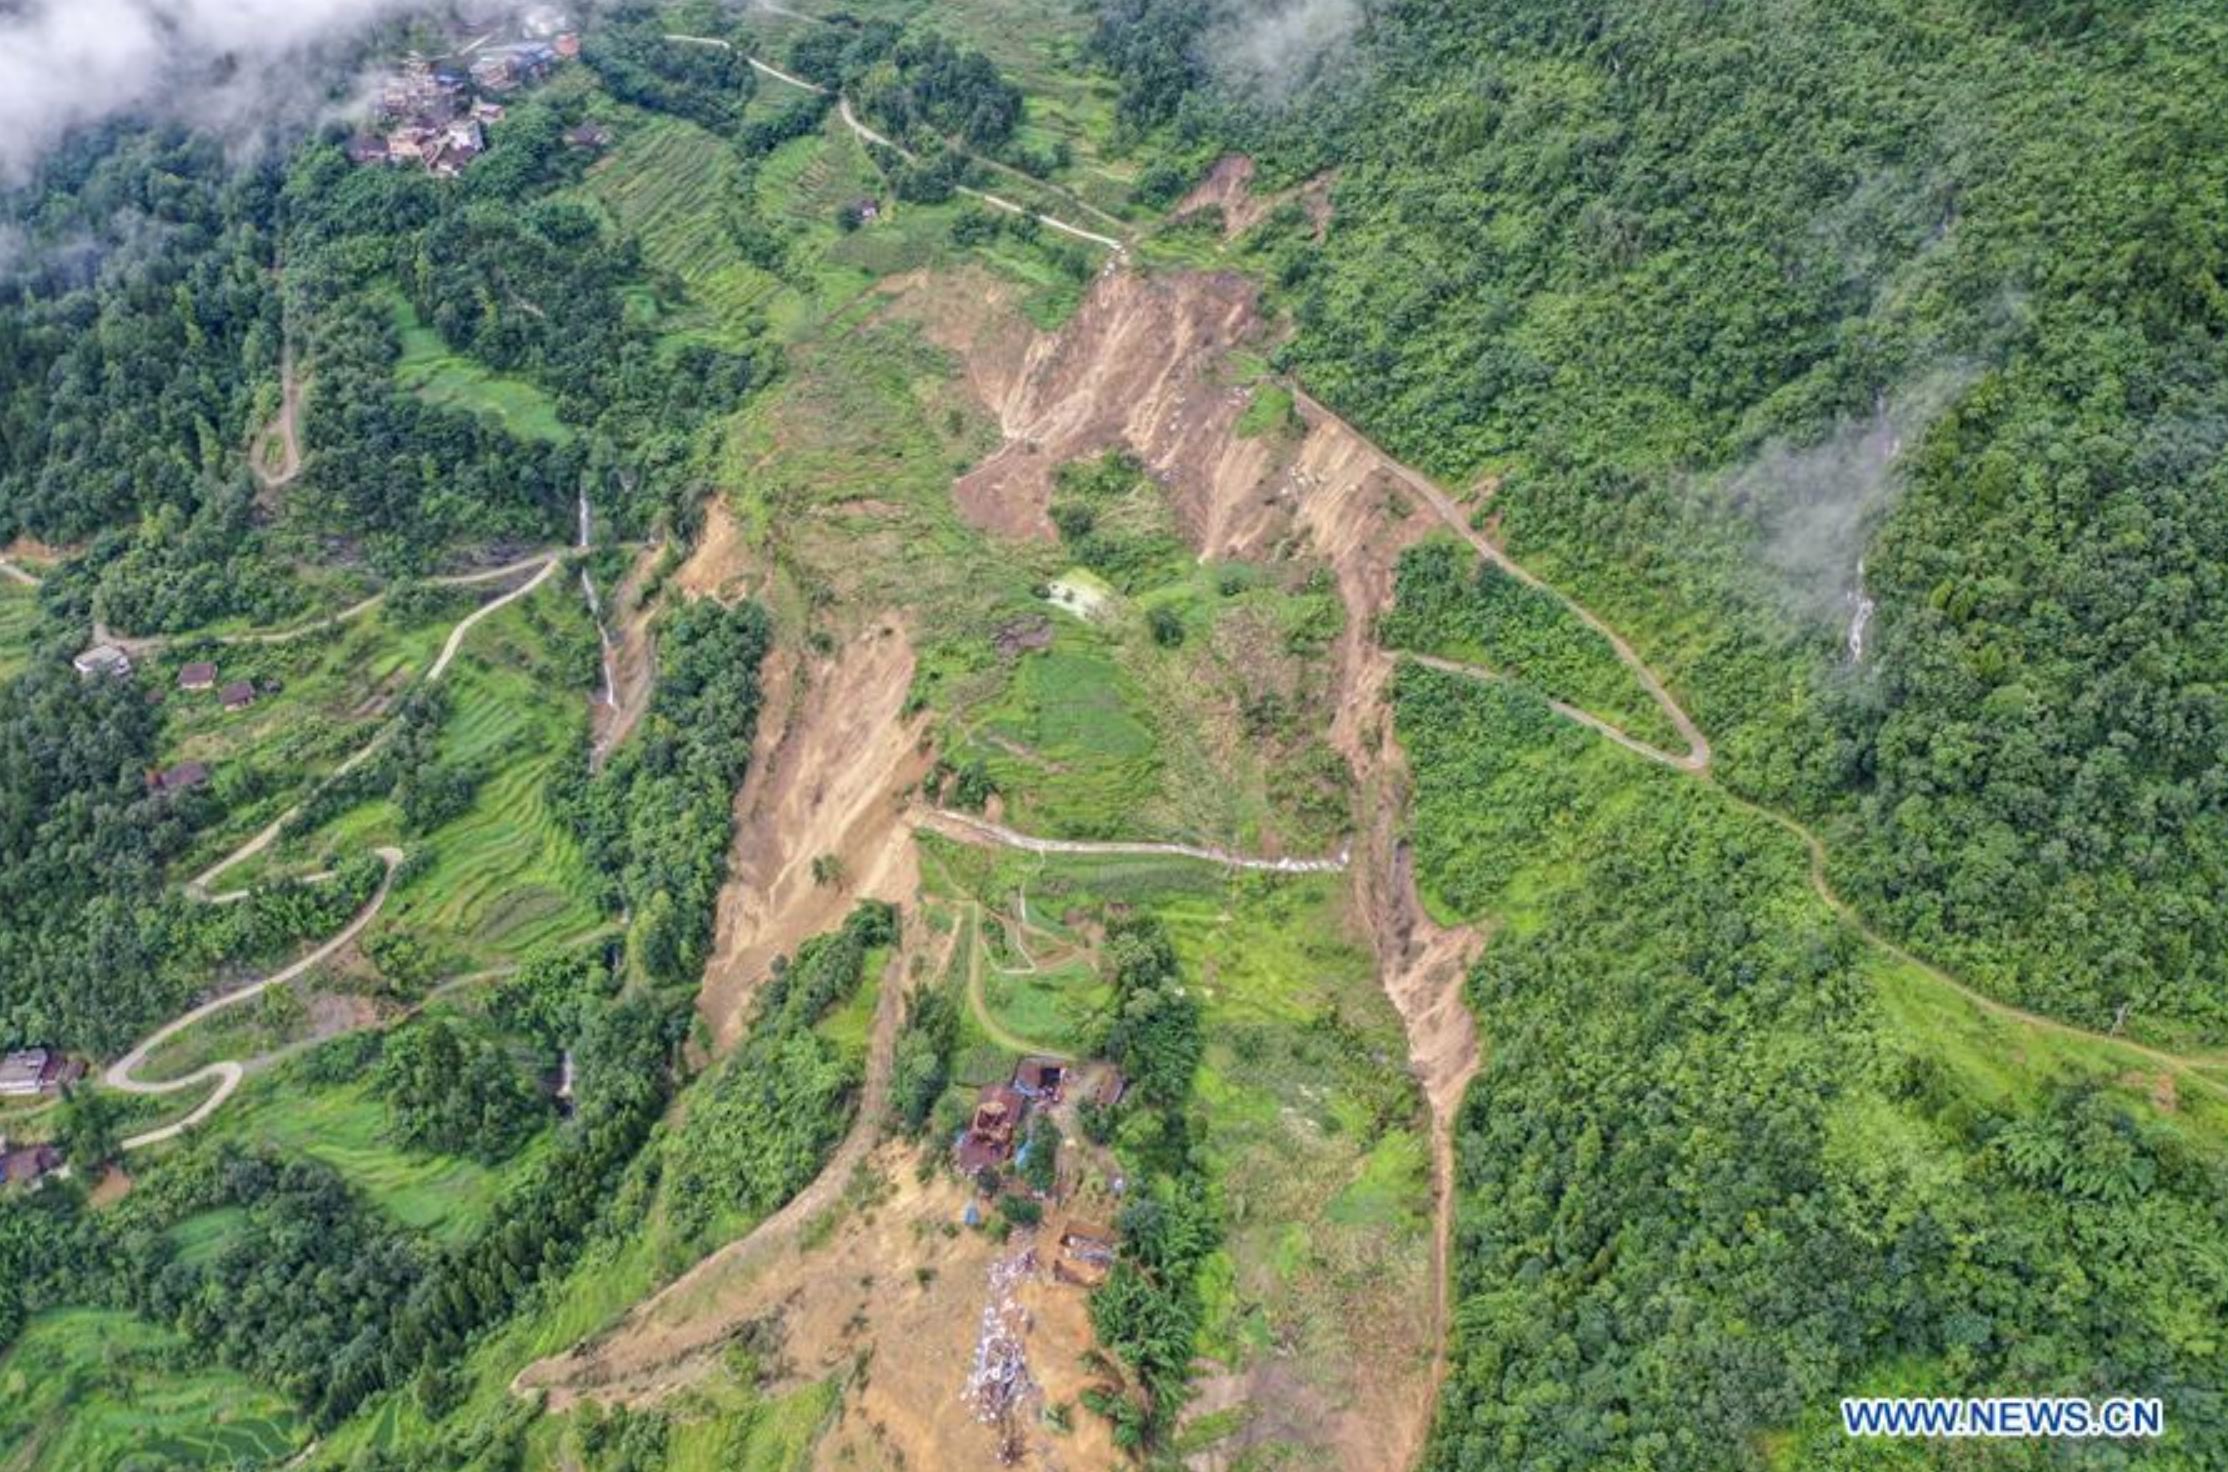 Liujing Village landslide